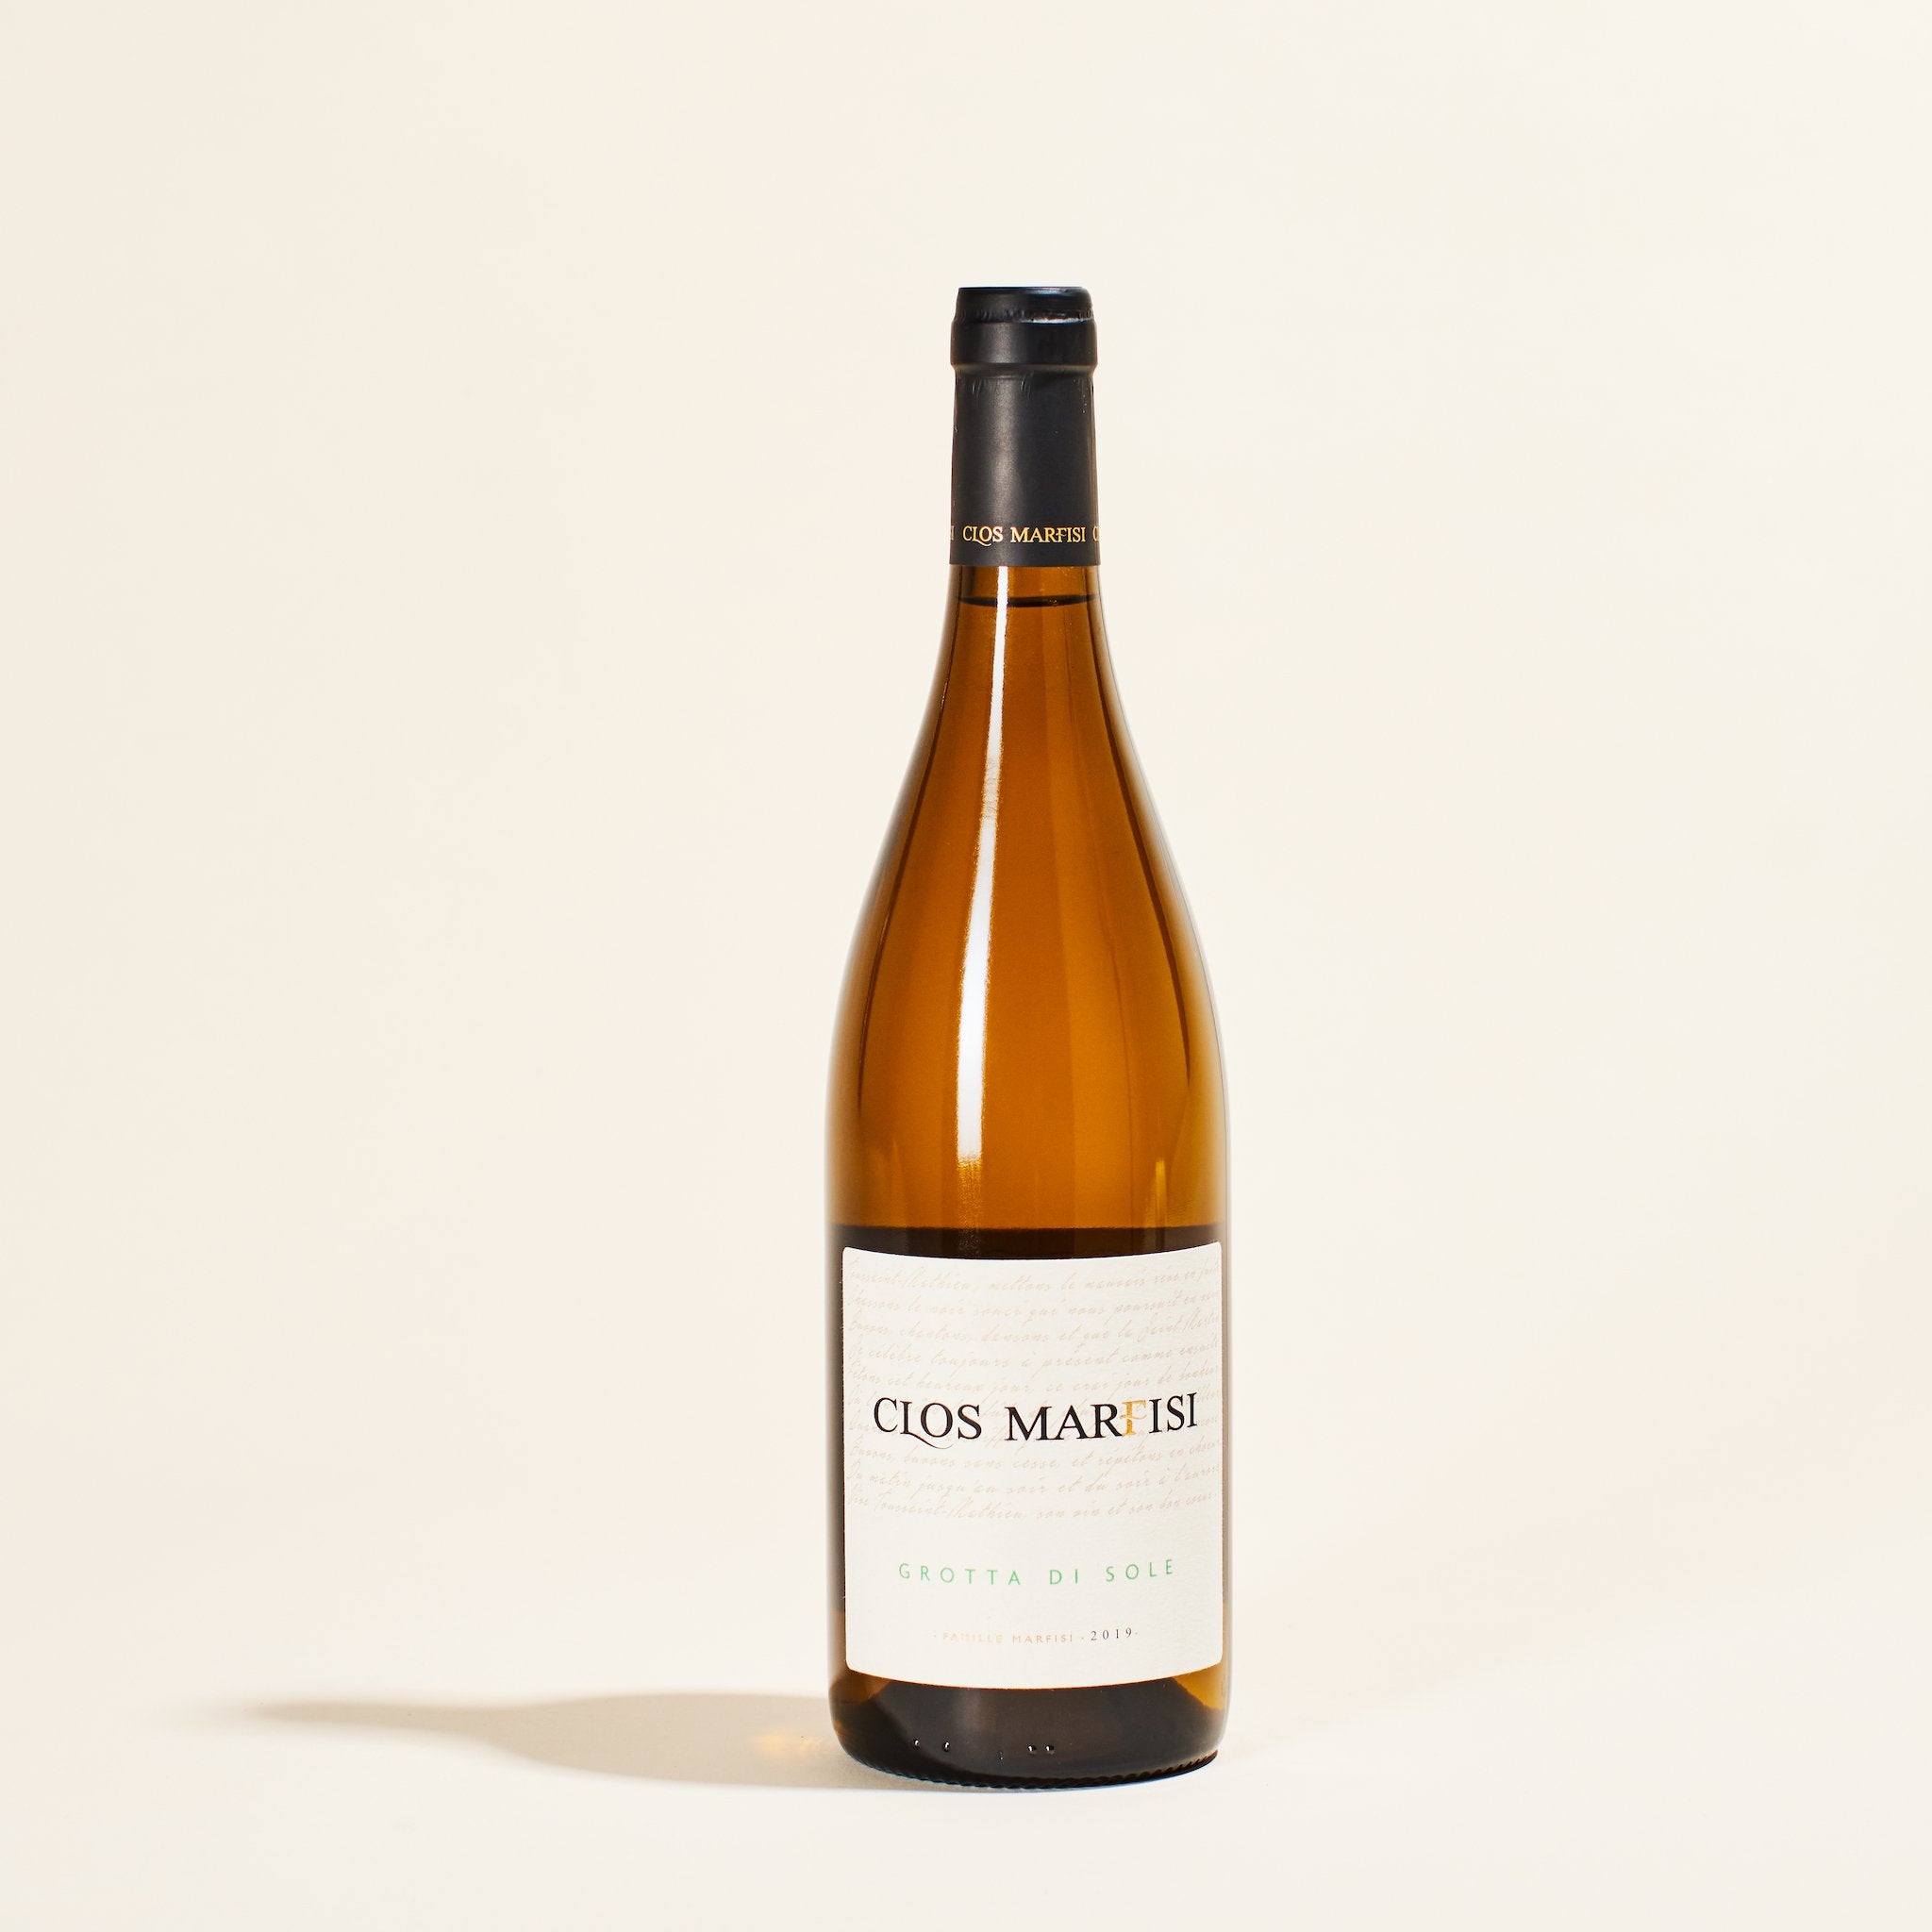 grotta di sole blanc marfisi patrimonio france natural white wine bottle